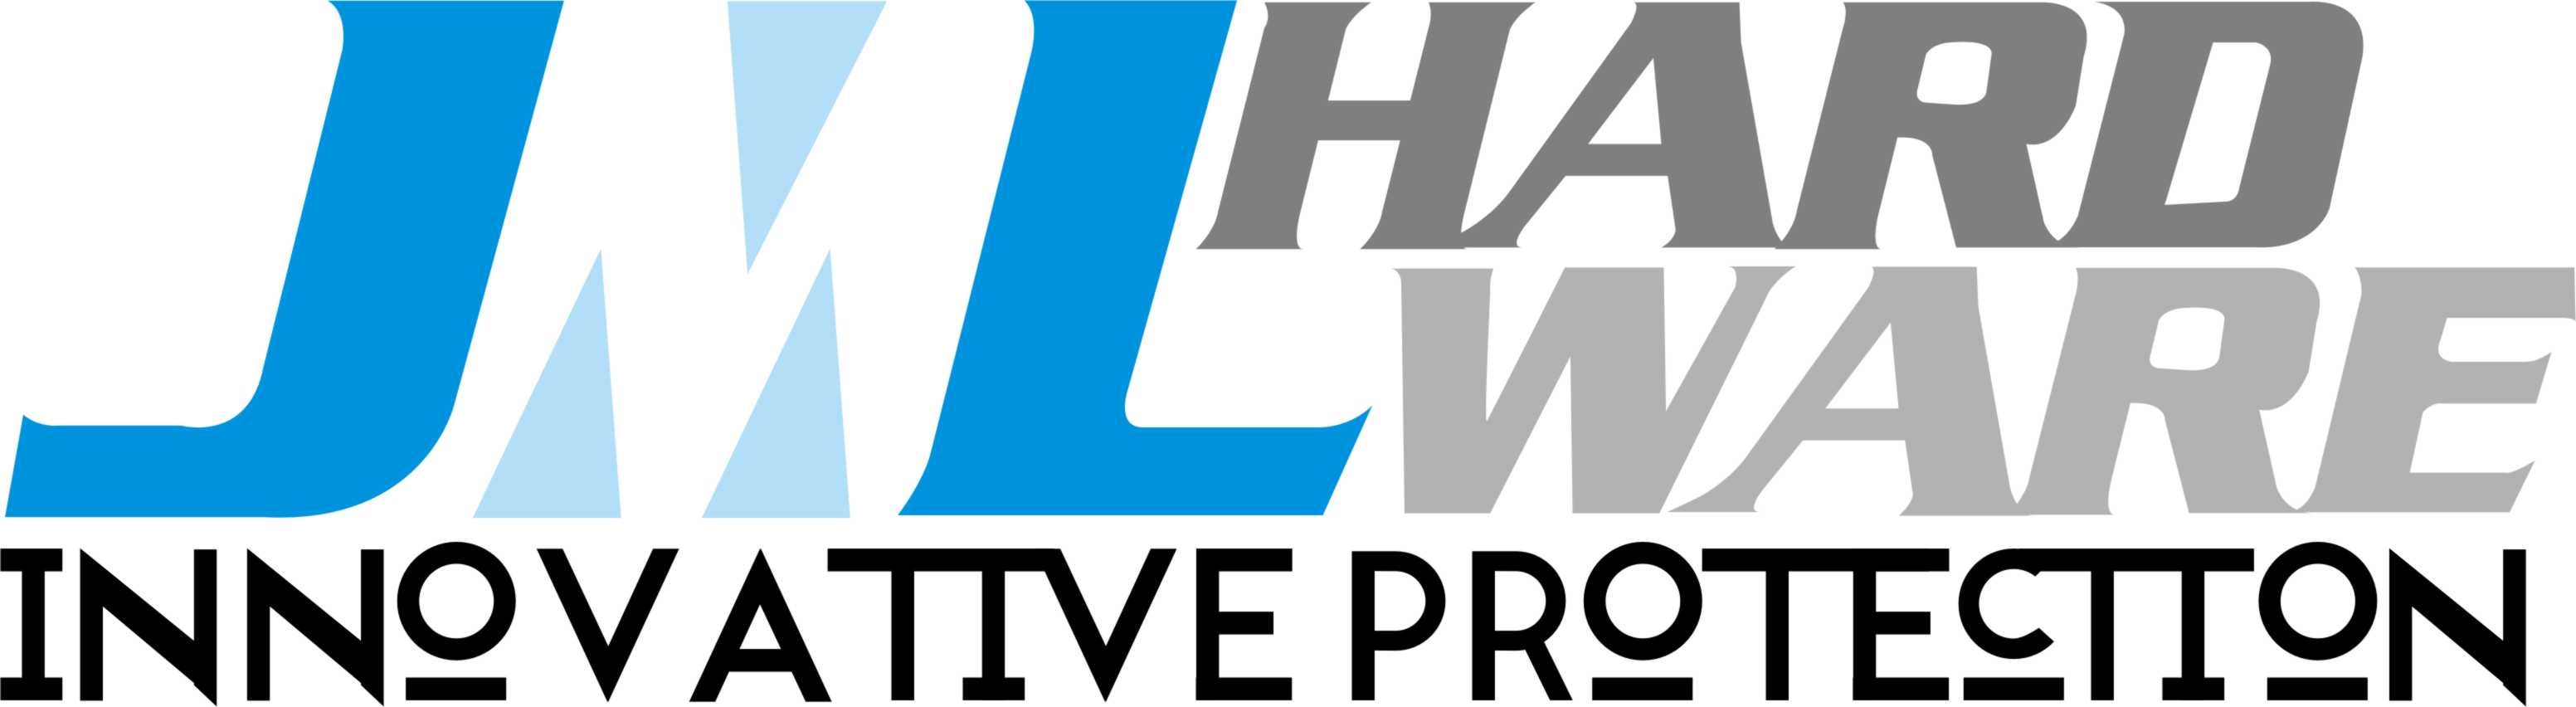 jml_hardware_logo hi res JML Hardware